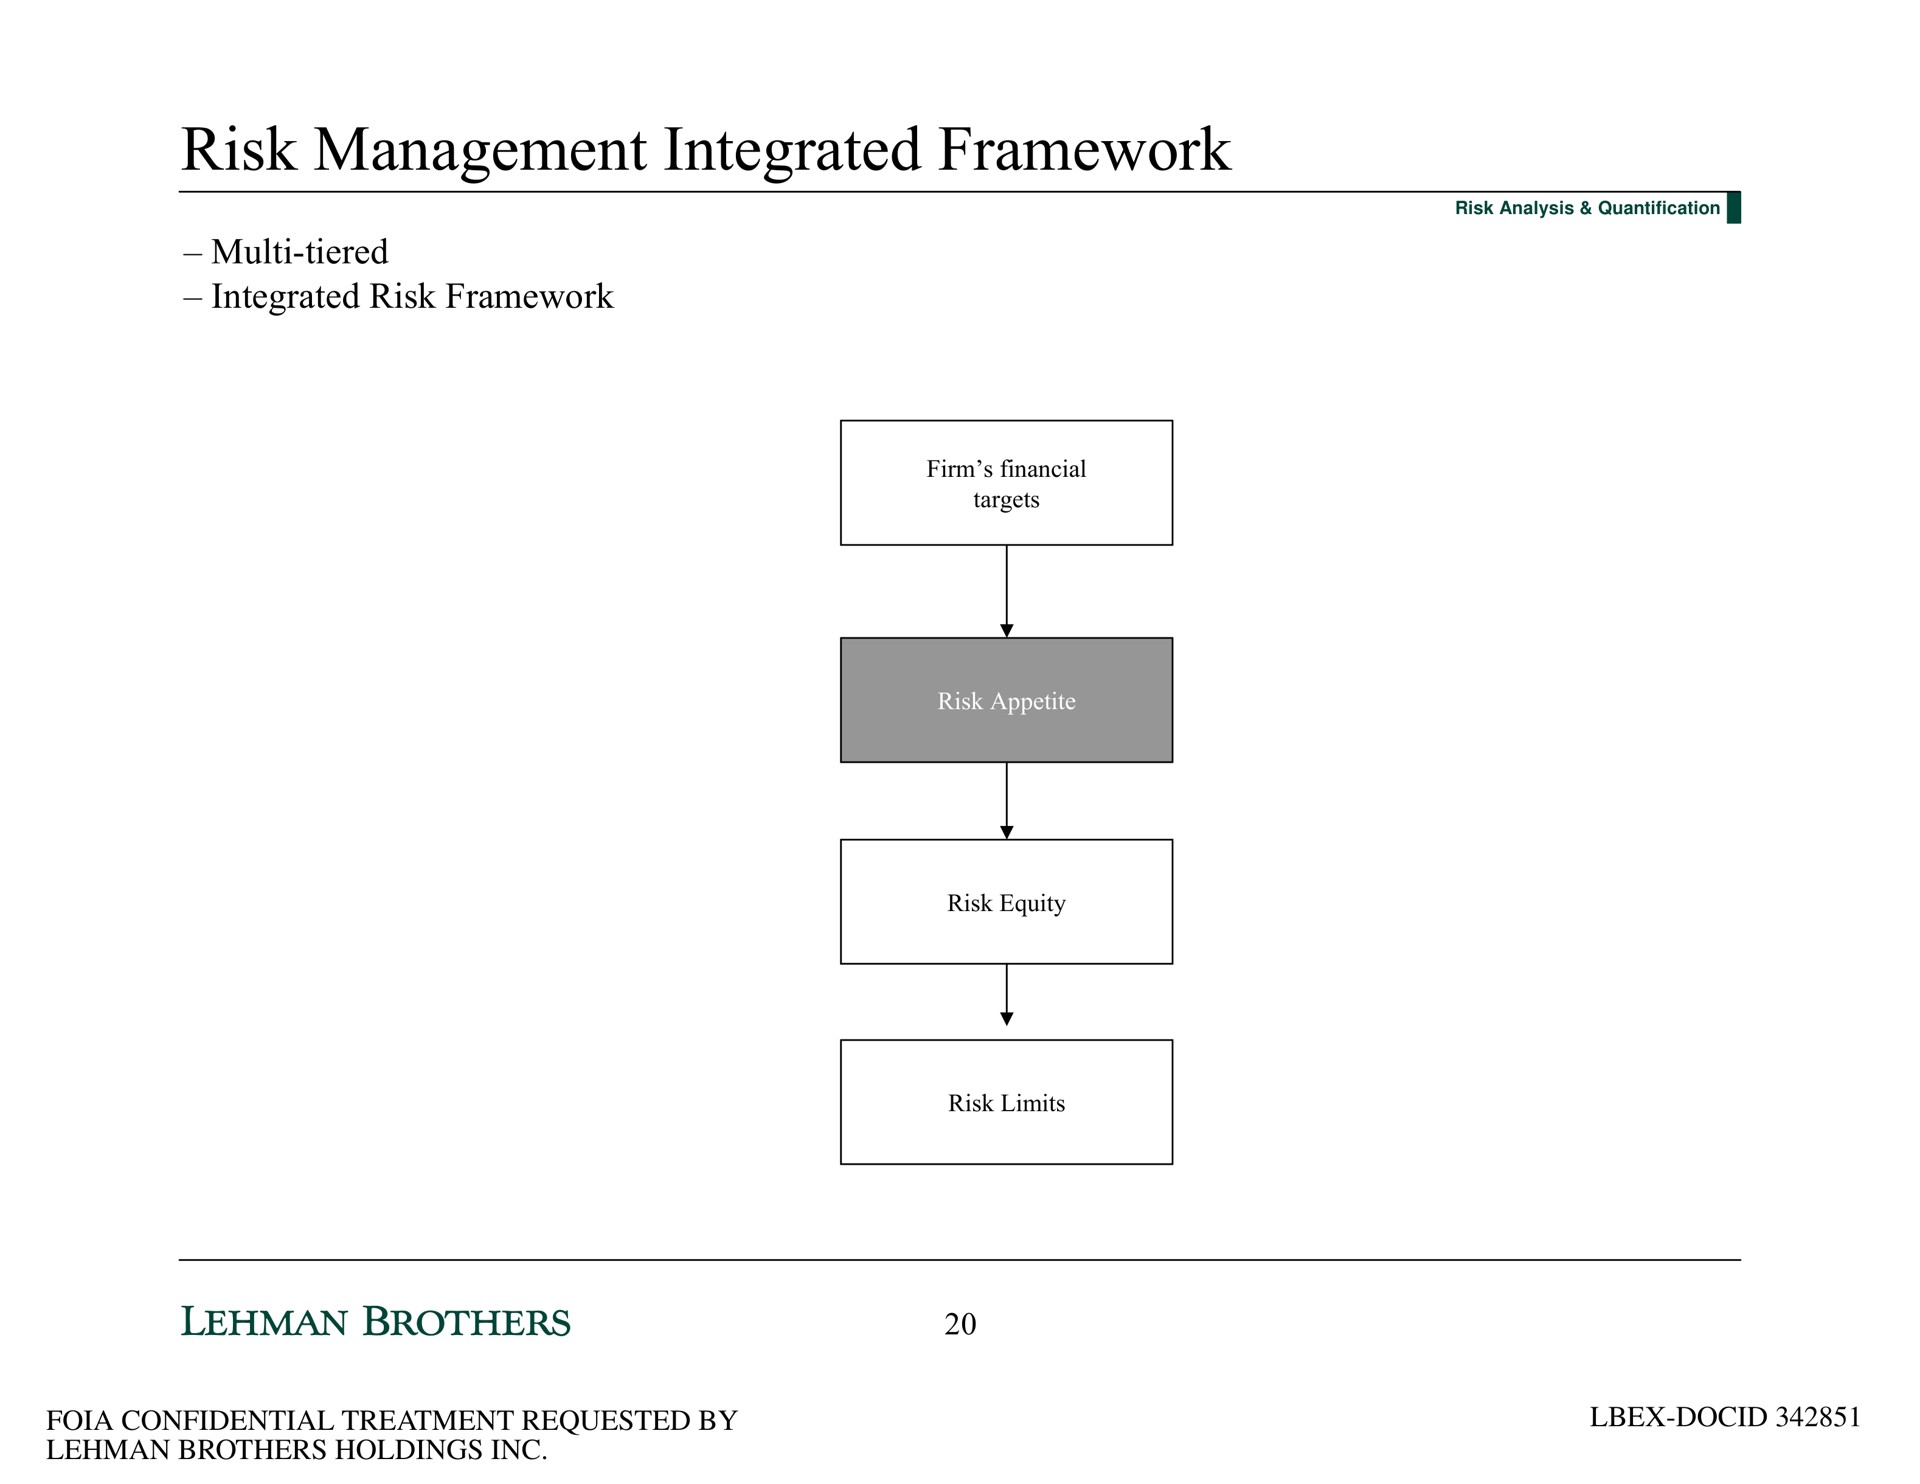 risk management integrated framework tiered integrated risk framework | Lehman Brothers